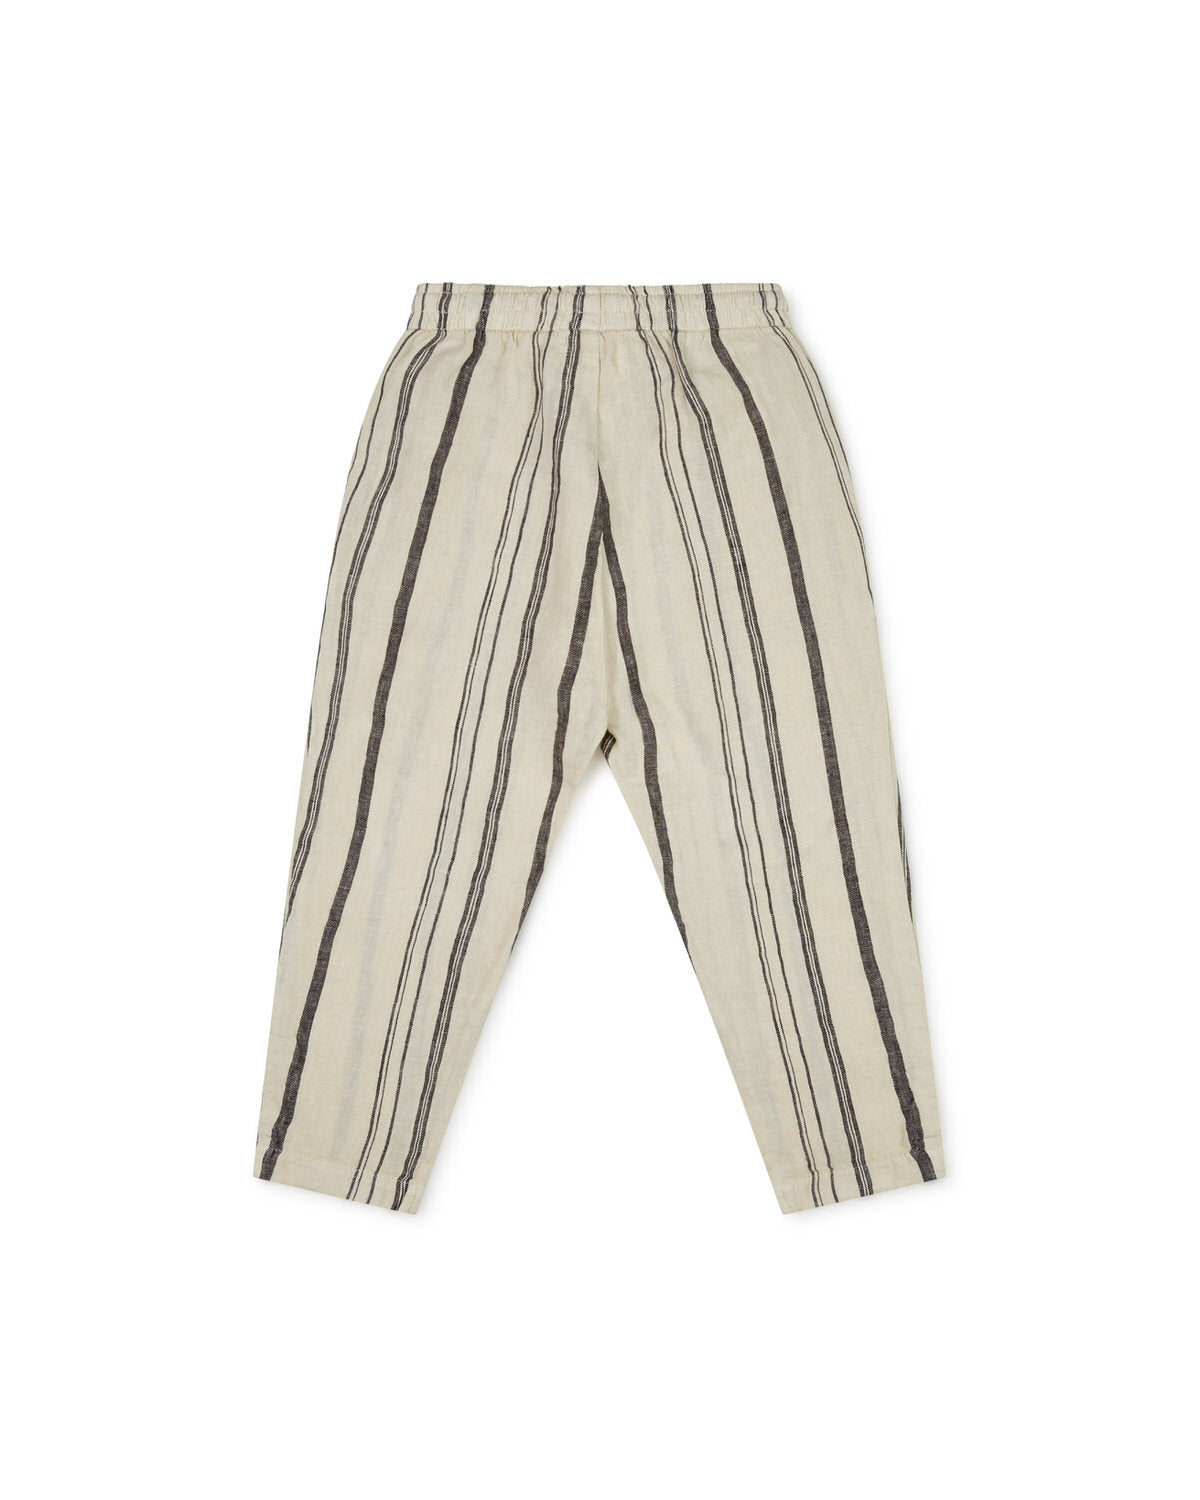 Leisure Pants beige/striped